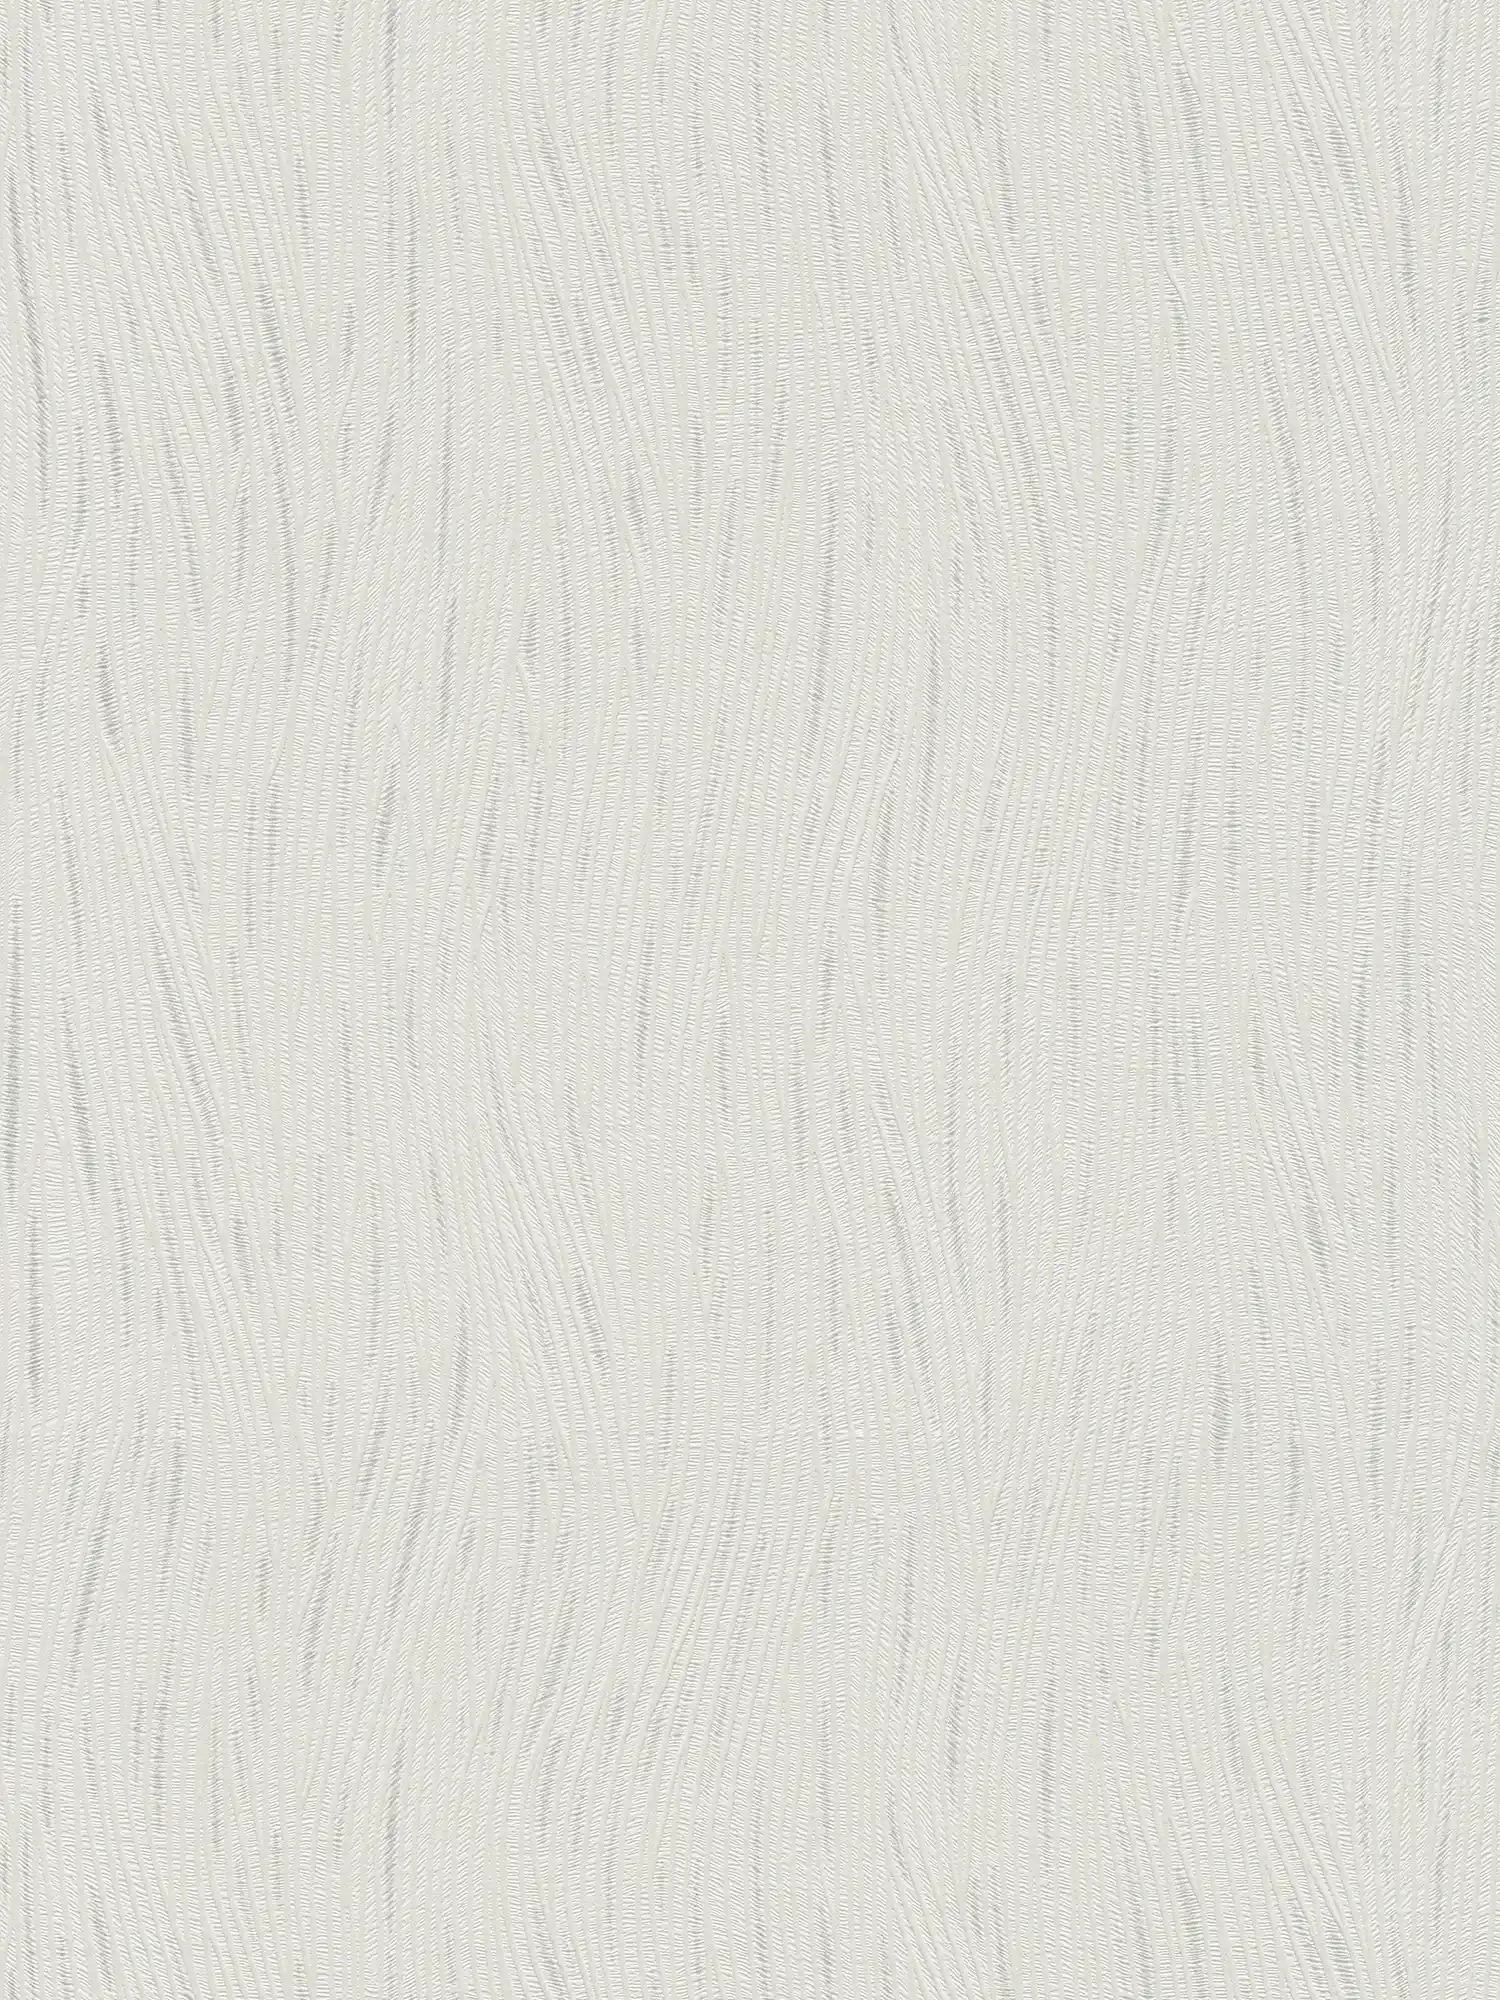 Papier peint graphique motif vagues et accents métalliques - blanc, argenté
